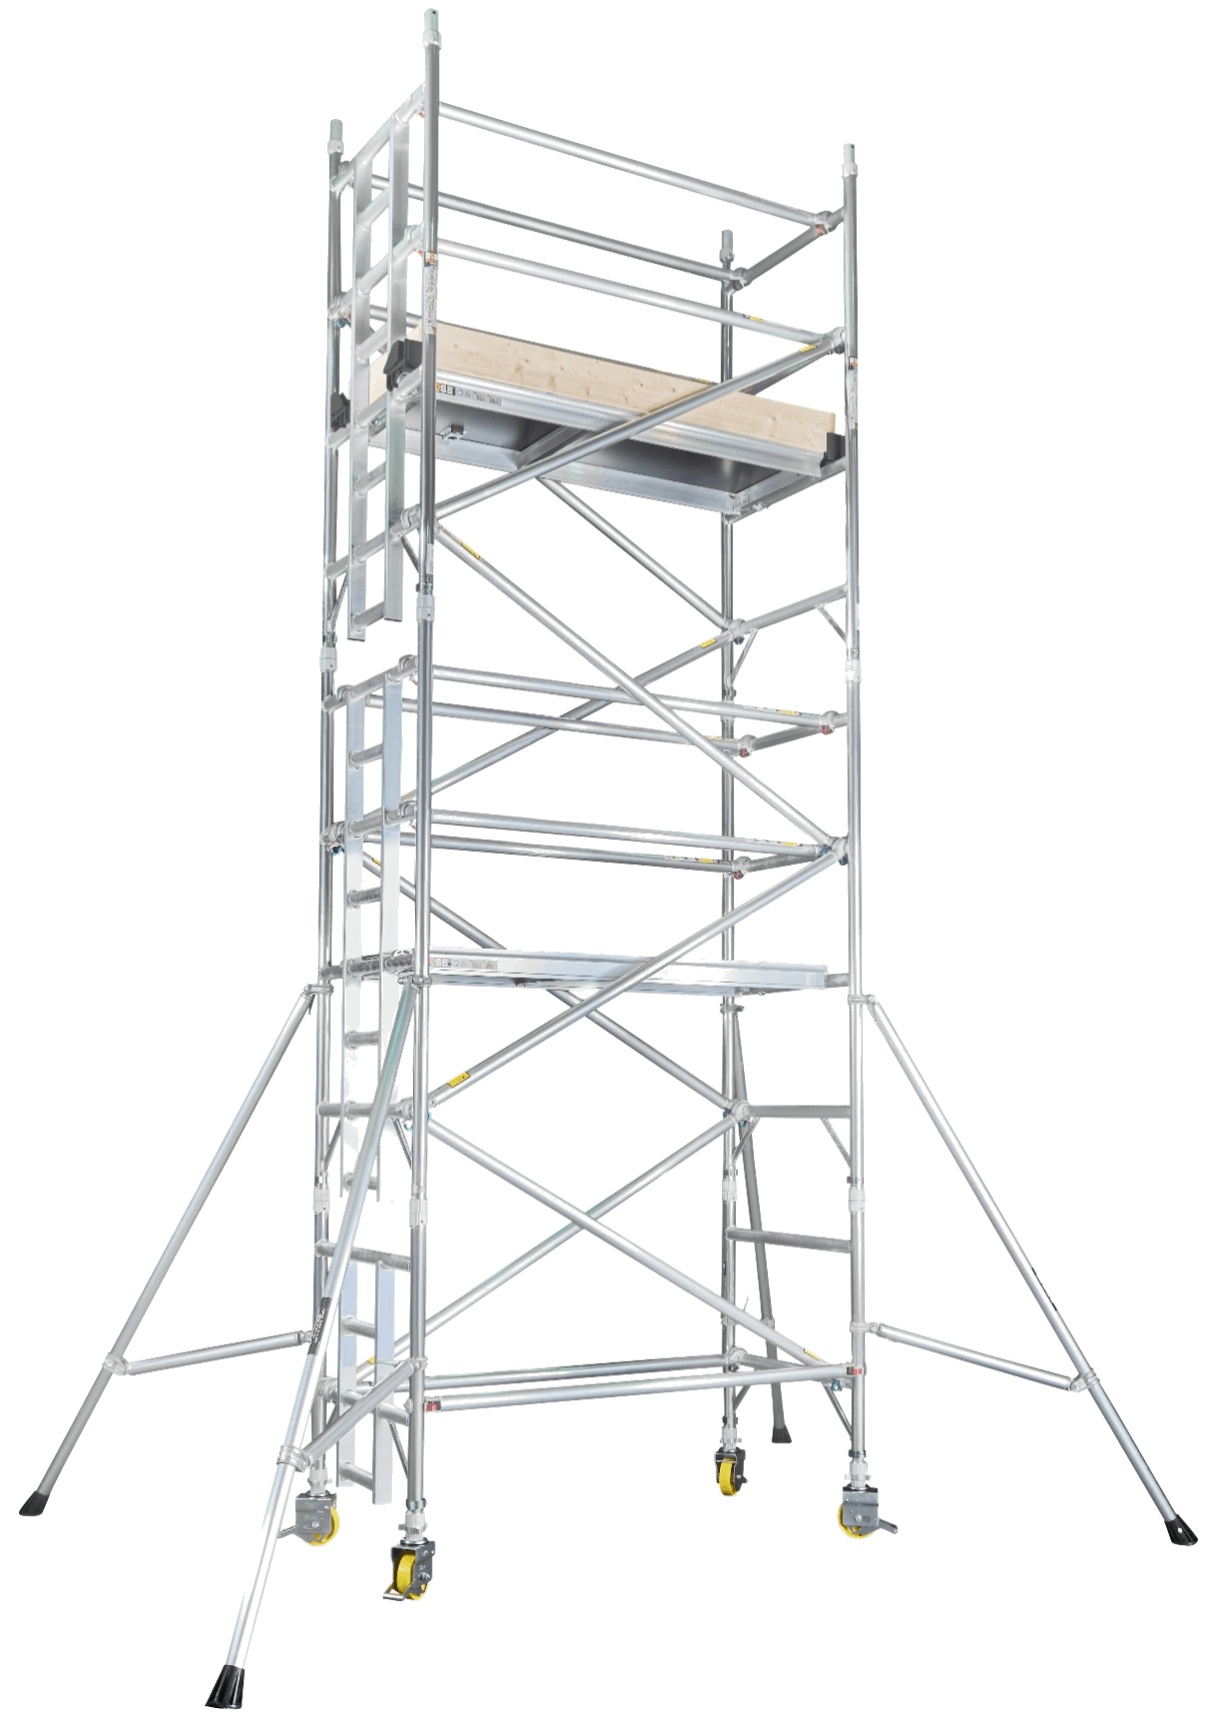 BoSS Ladderspan Aluminium Access Tower 3T Single Width